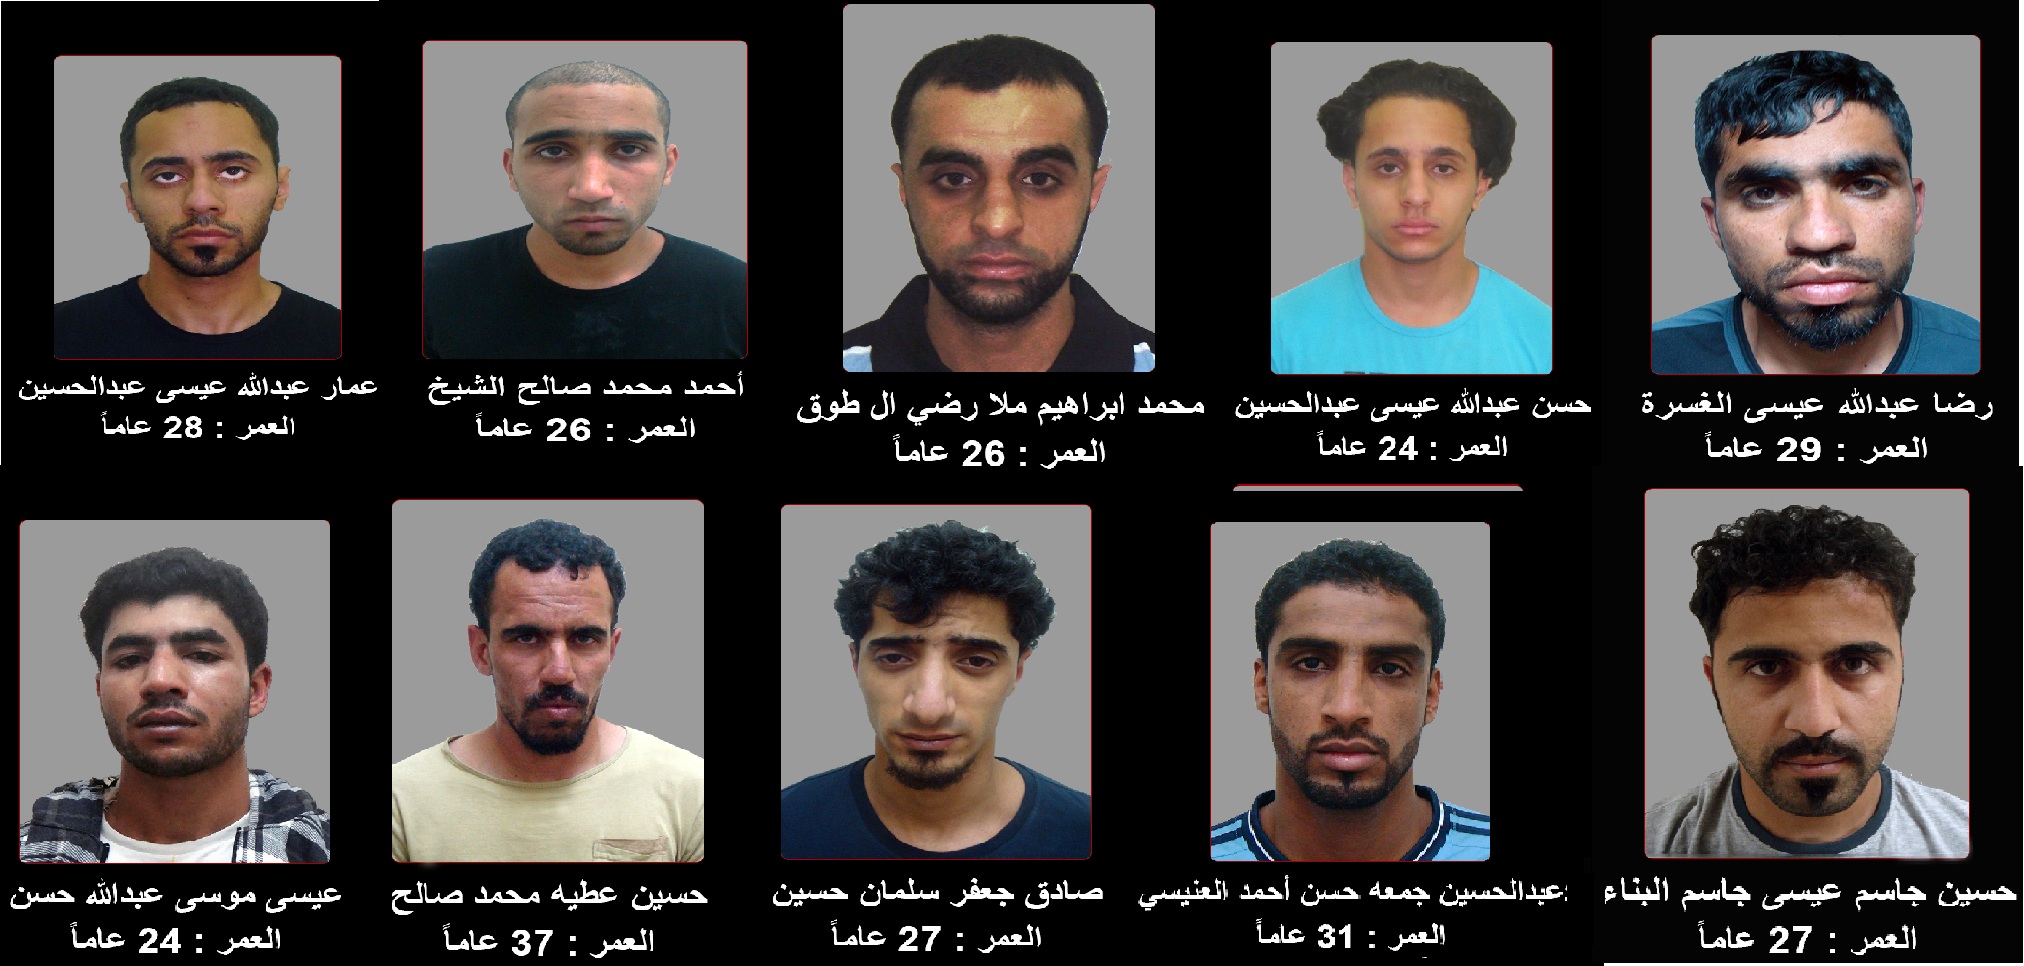 بالتفاصيل.. كيف هرب 10 إرهابيين من سجن جو البحريني؟